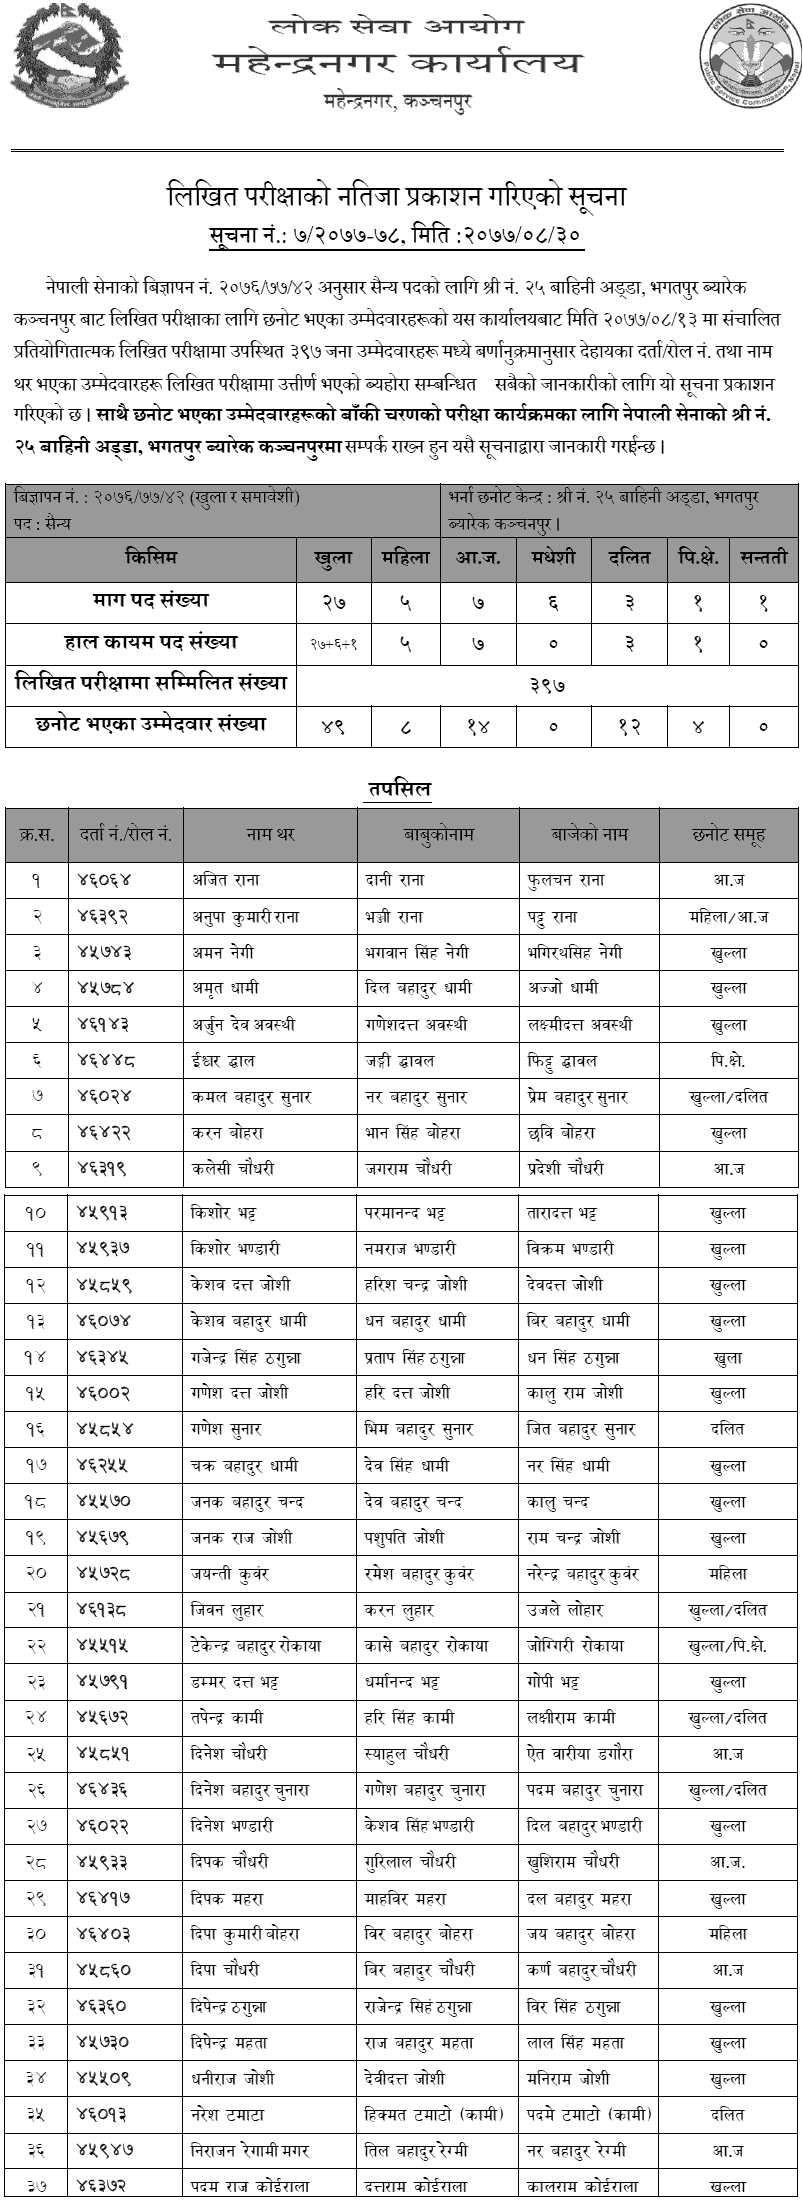 Nepal Army Kanchanpur, Bhagatpur Barak Military (Sainya) Post Written Exam Result